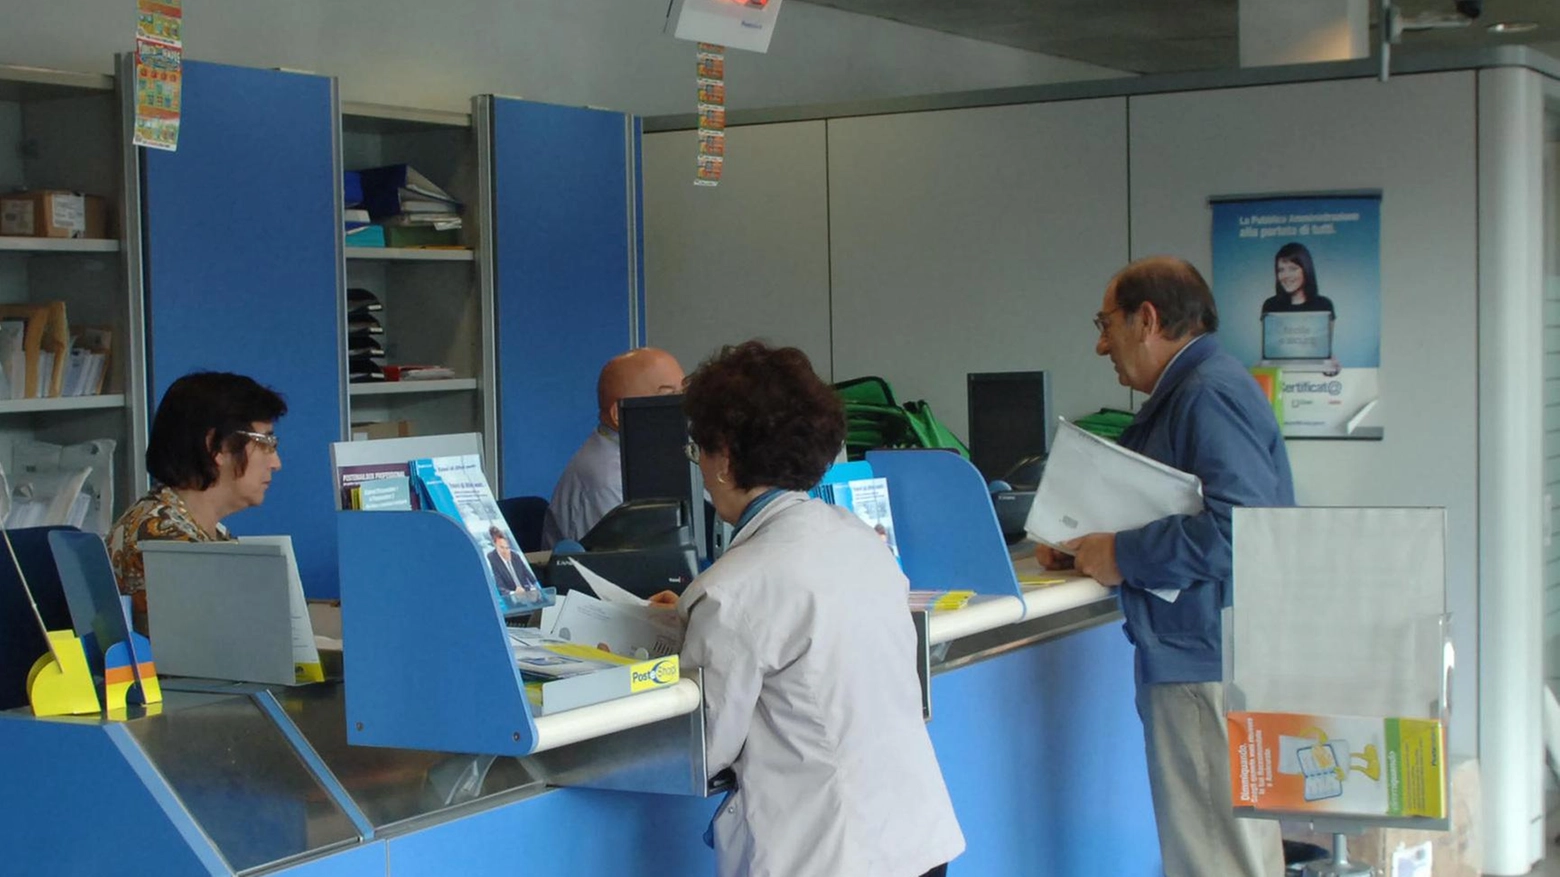 Ufficio postale Montecarlo  Tra luglio e agosto  chiusura di 19 giorni